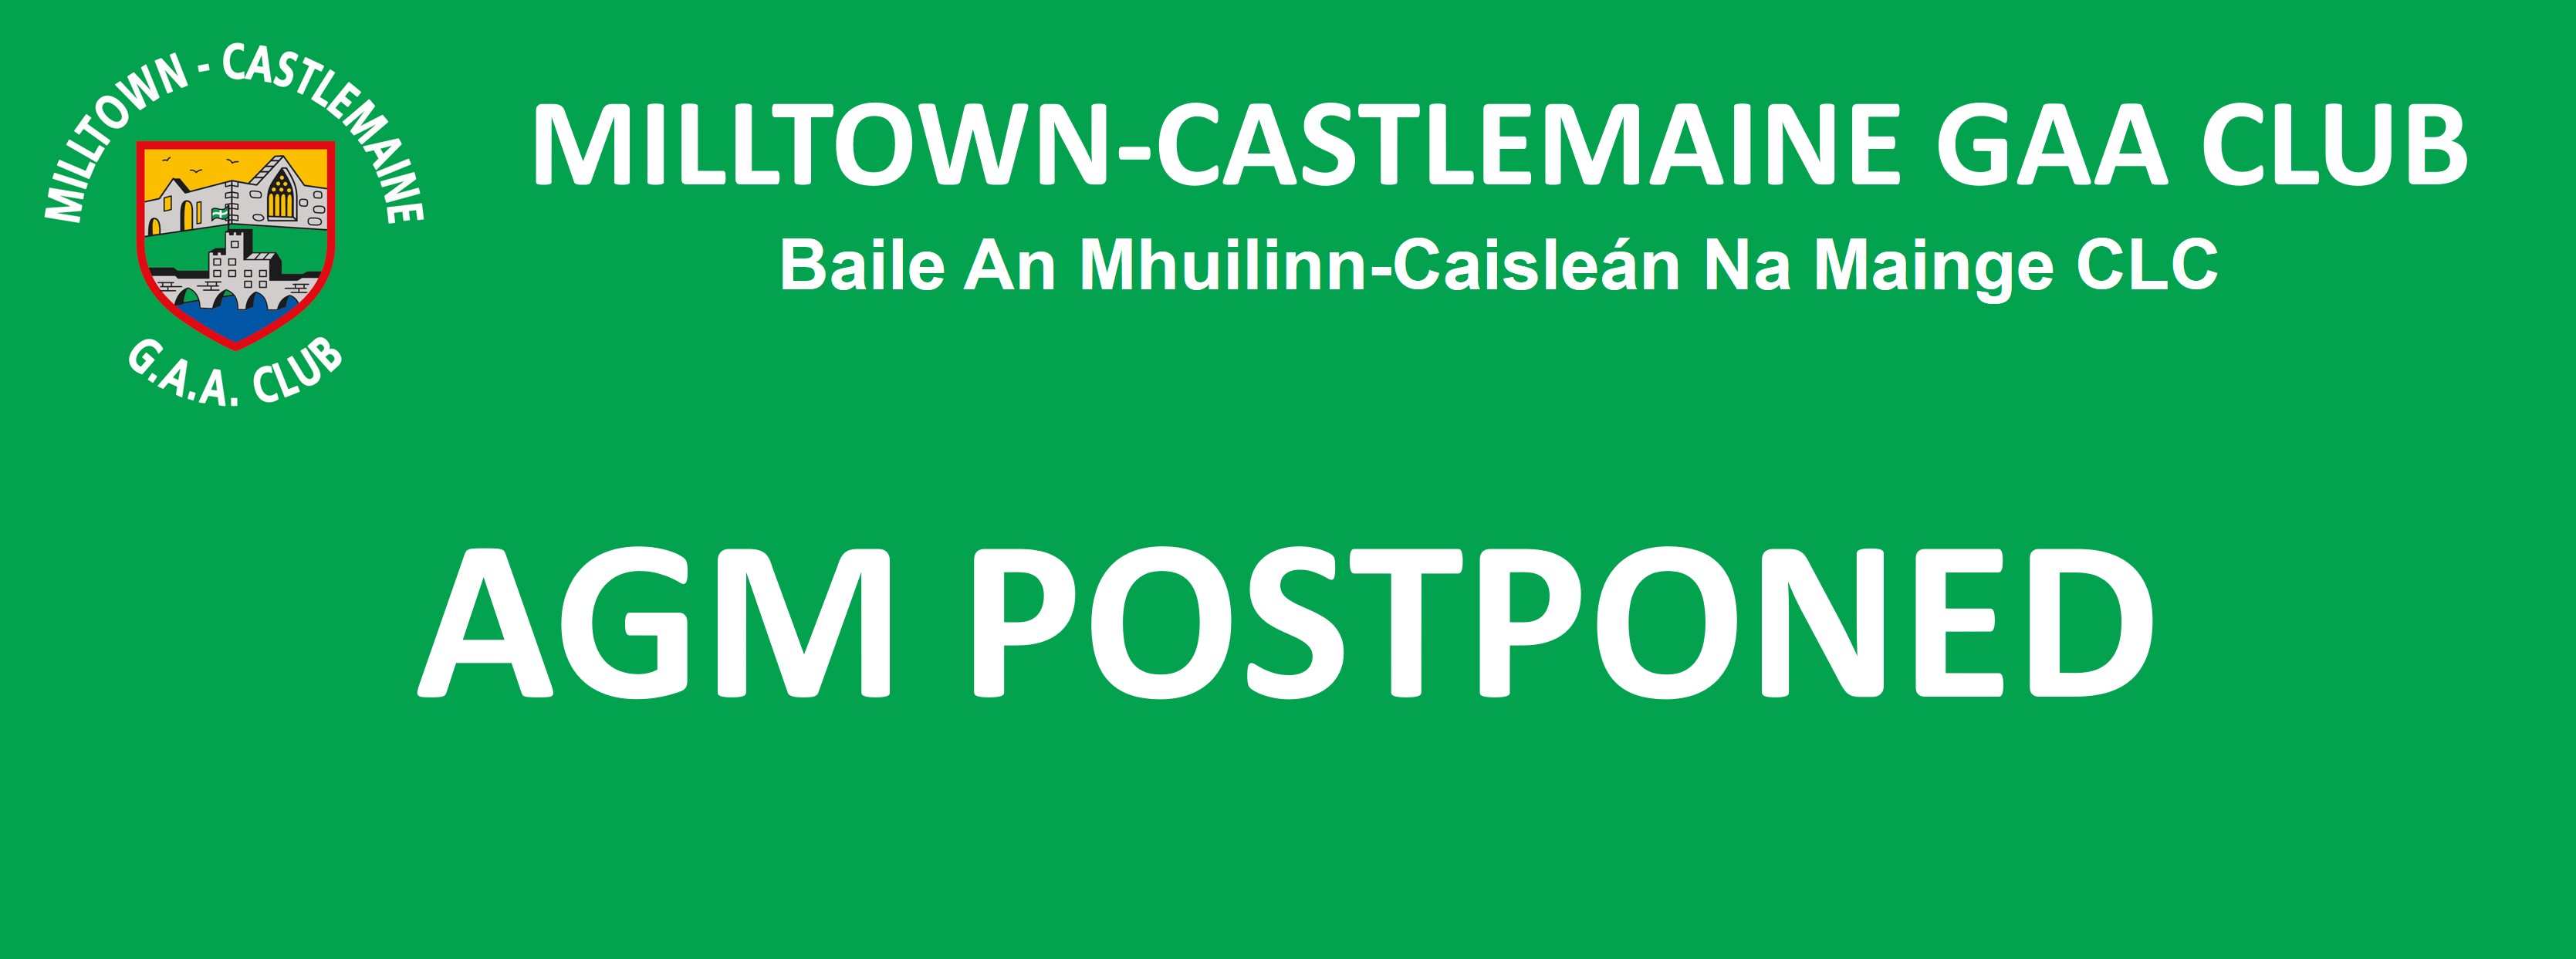 AGM Postponed